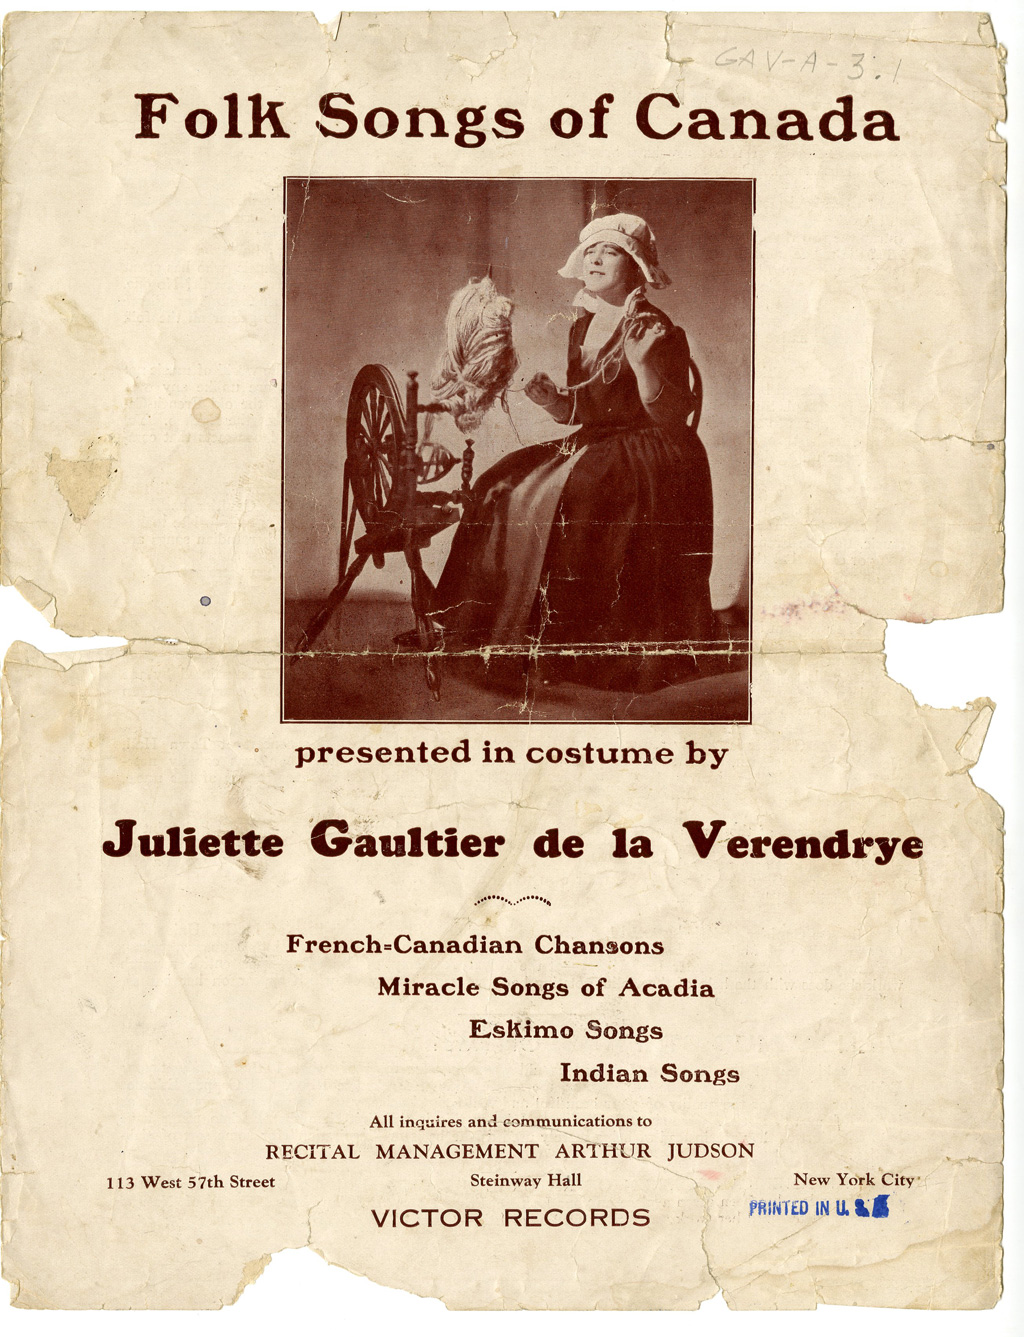 Matériel promotionnel de Juliette Gaultier